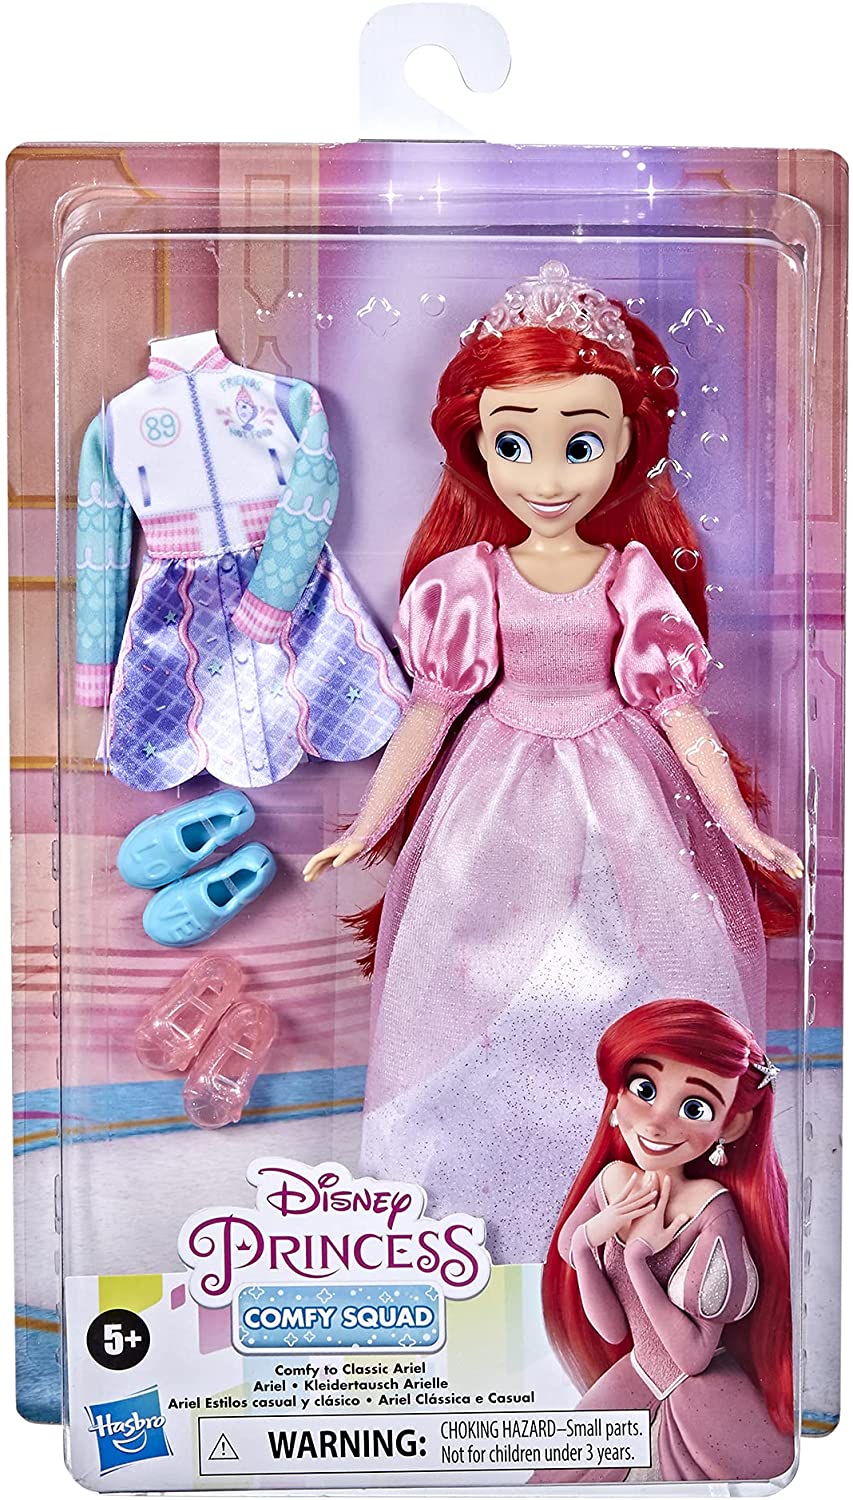 Disney Princess Comfy to Classic dolls: Ariel and Cinderella